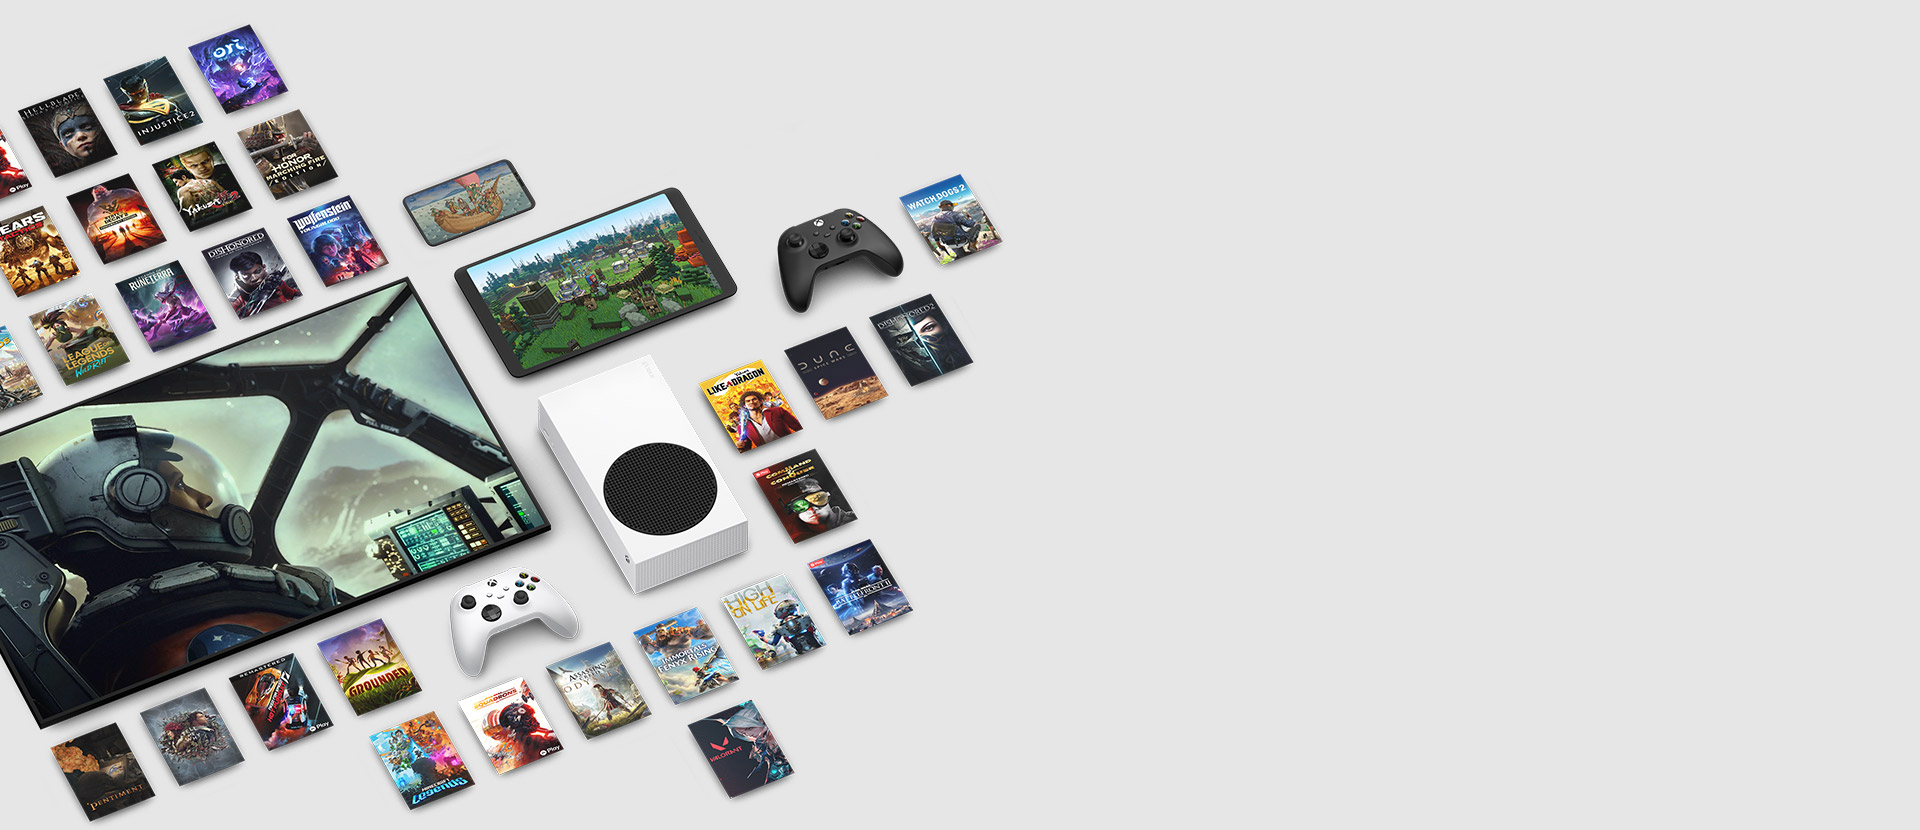 Game-Art aus mehreren Spielen, die jetzt mit Xbox Game Pass Ultimate erhältlich sind, umgeben mehrere Geräte, darunter eine Konsole, ein Mobiltelefon, ein Tablet, ein Smart TV und Controller.